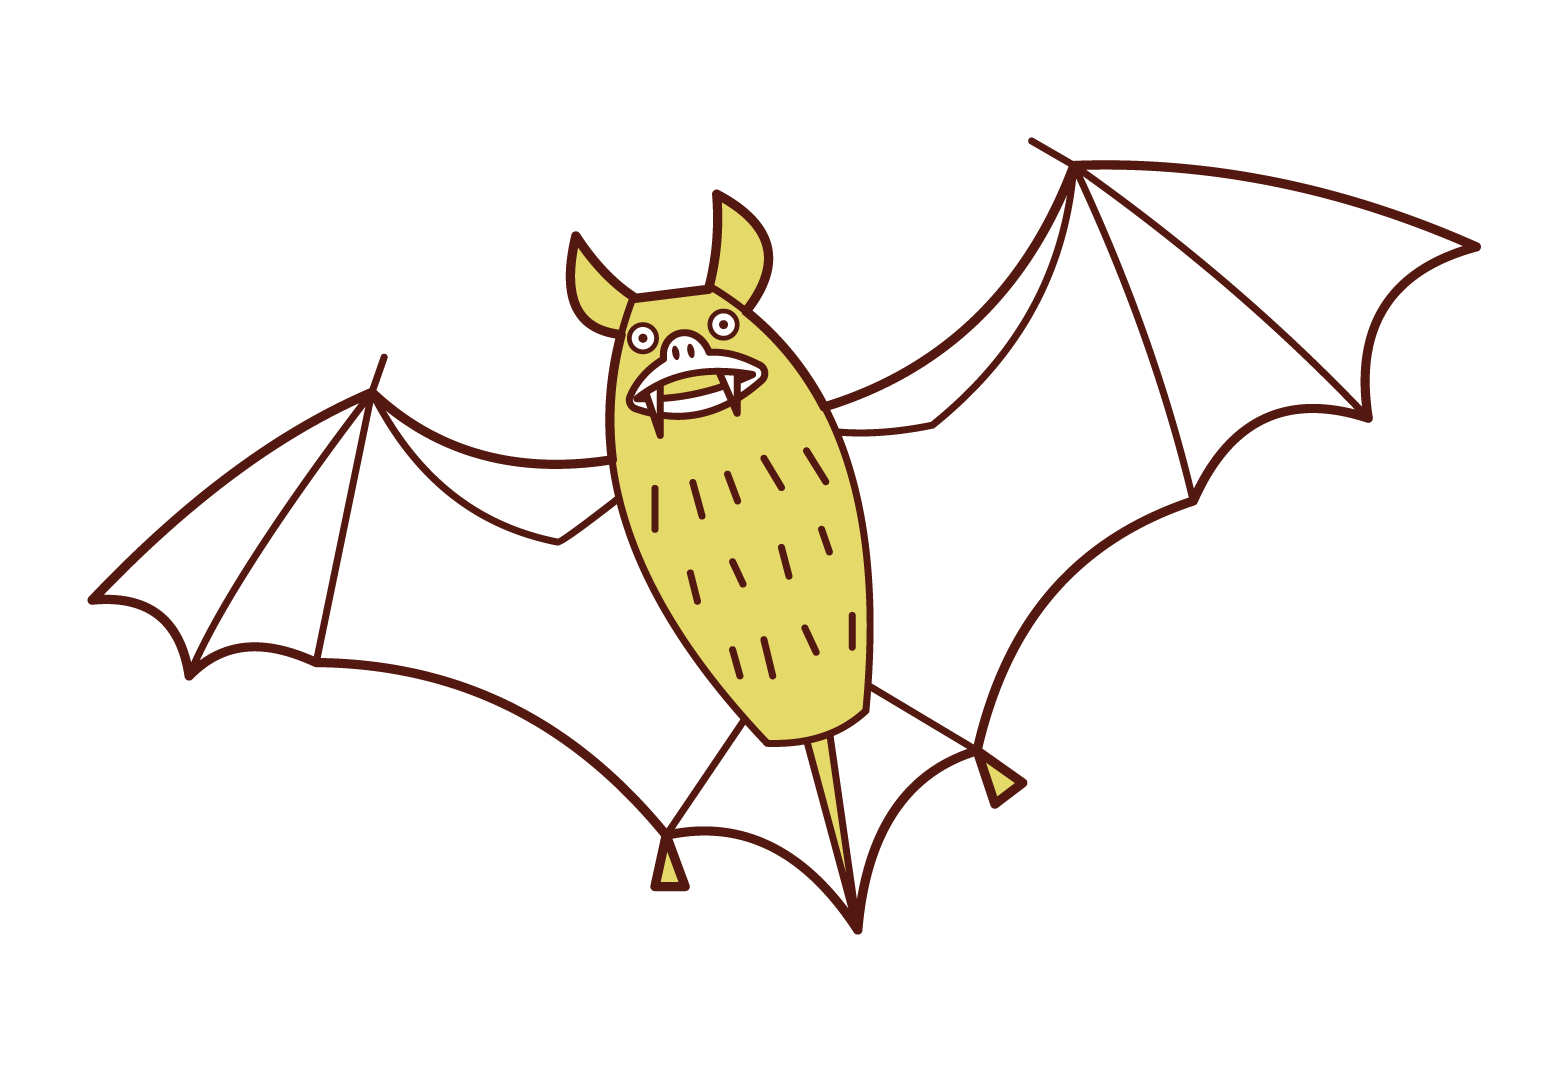 Illustration of a flying bat